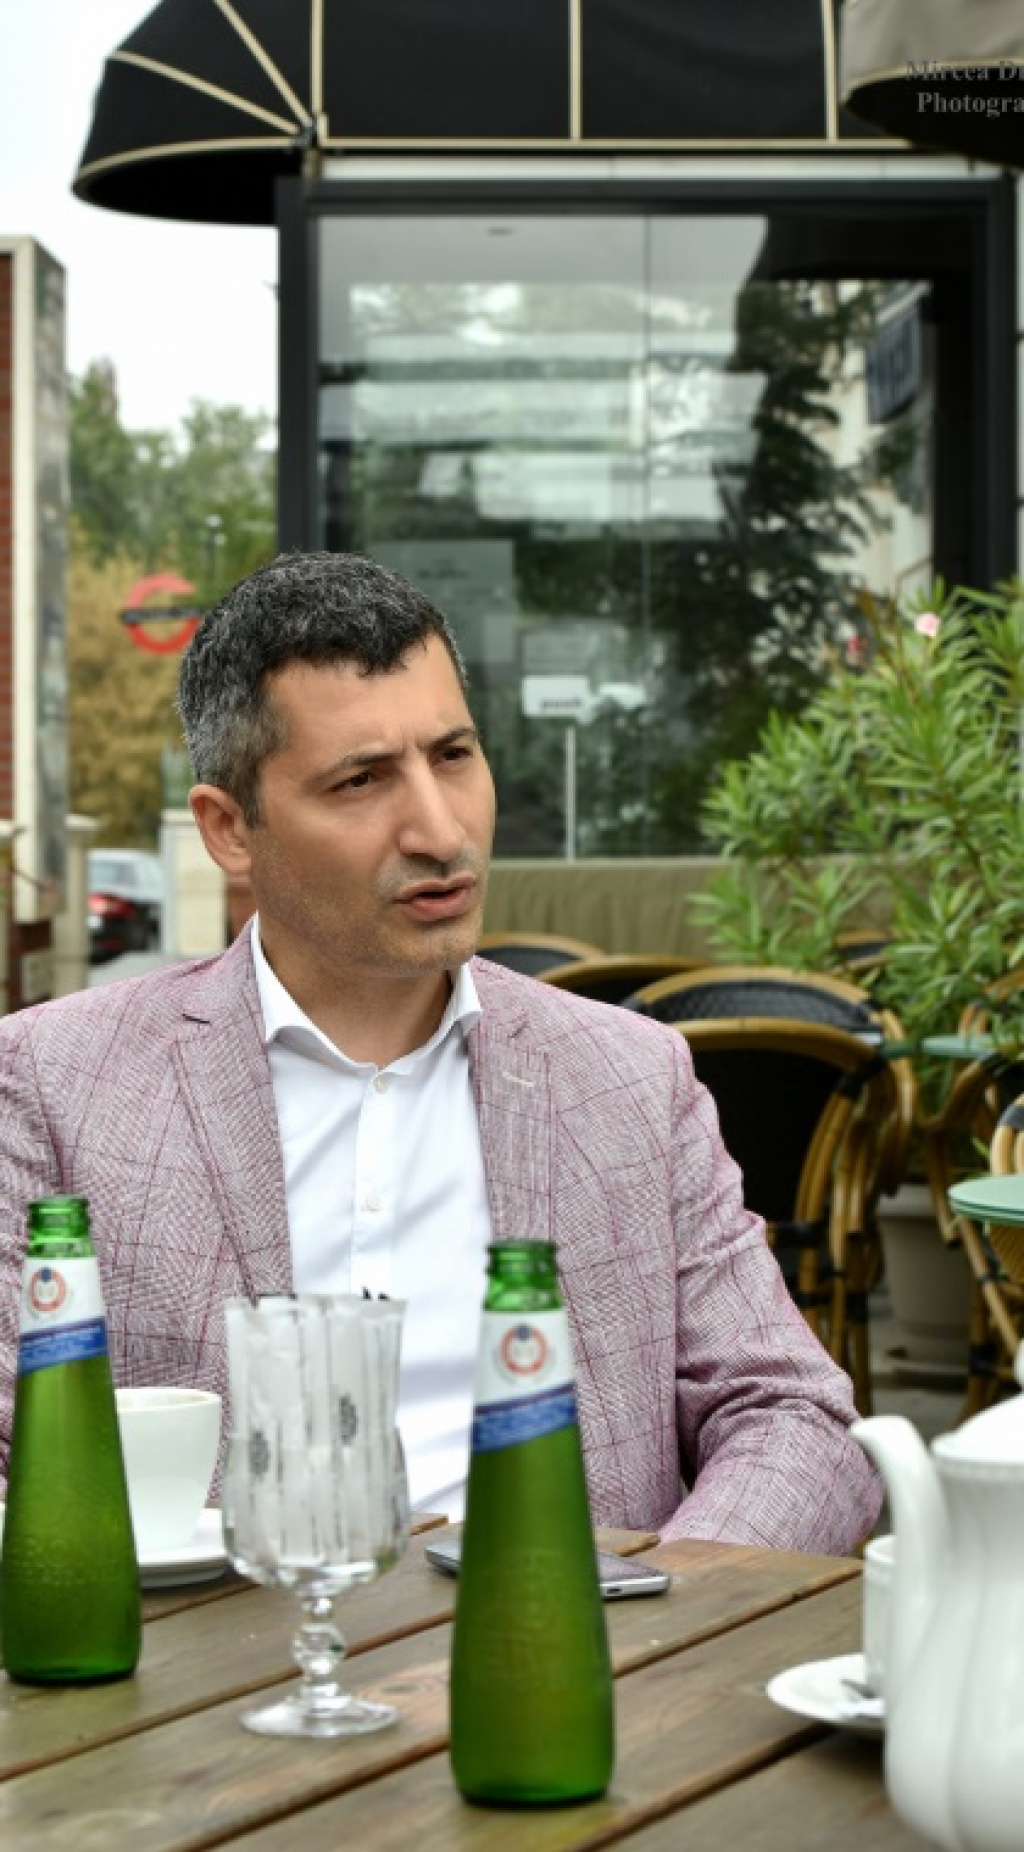 Viata dupa business: Razvan Diratian, managerul pentru care lupta cu secundele a devenit pasiune